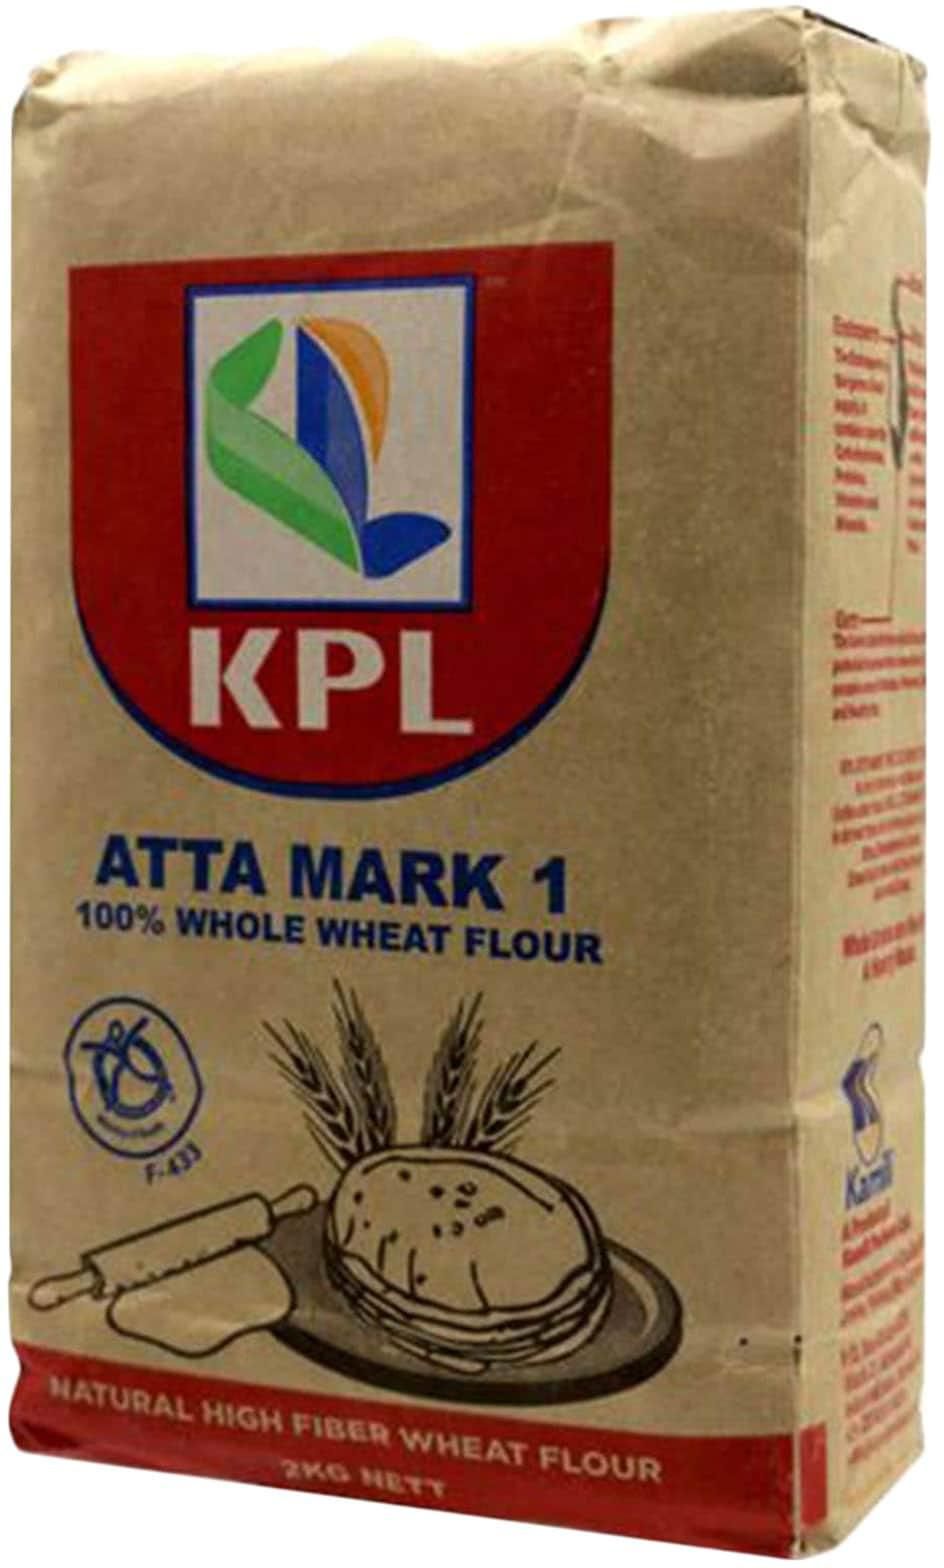 KPL Atta Mark 1 Wheat Flour 2Kg